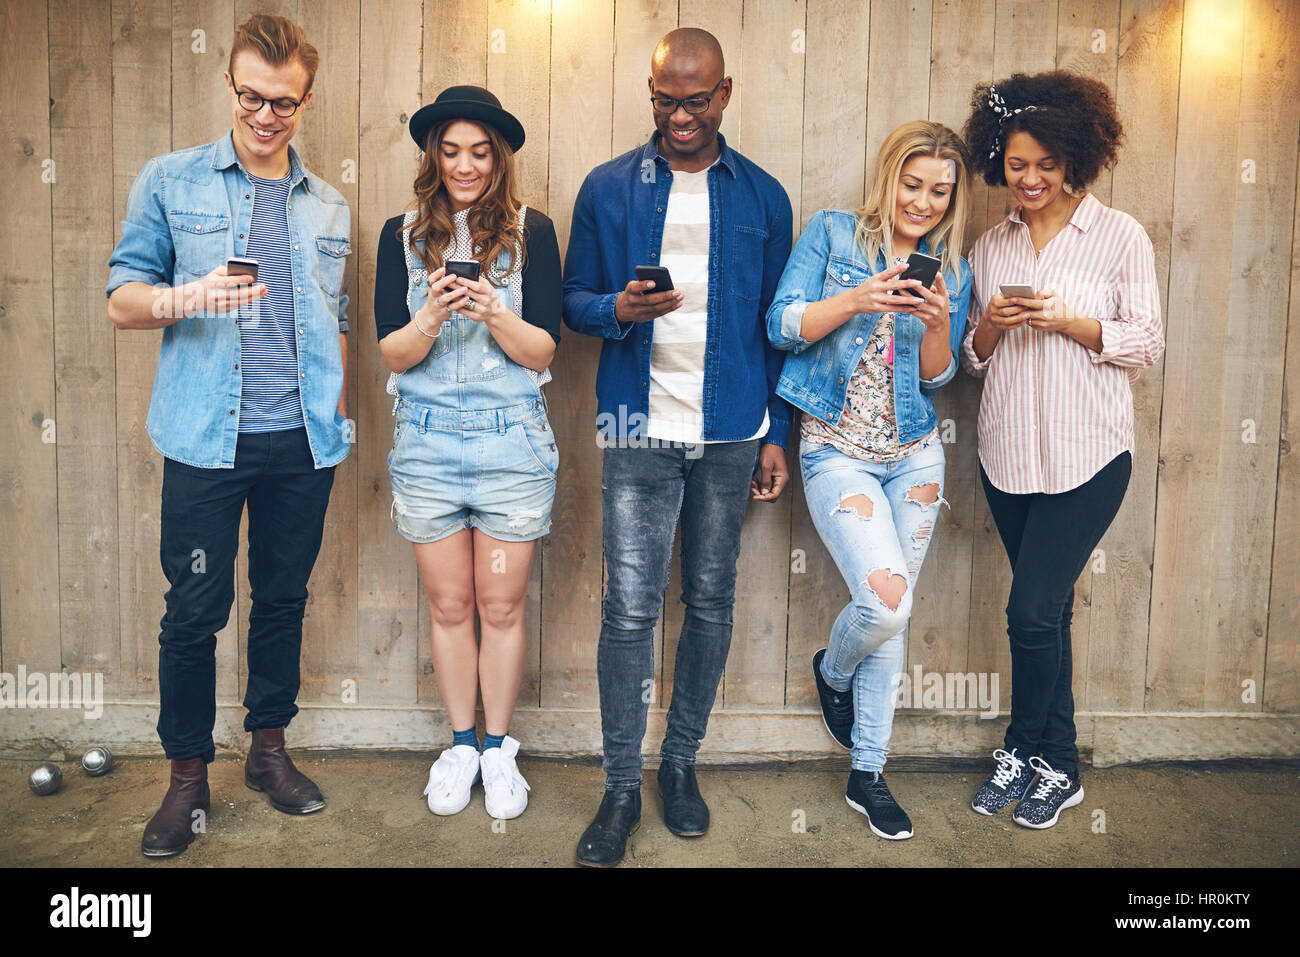 Un grupo de jóvenes durante una fiesta o reunión vistiendo ropa casual de pie cerca de la pared de madera todos mirando a sus smartphones, todos sonrientes Foto de stock